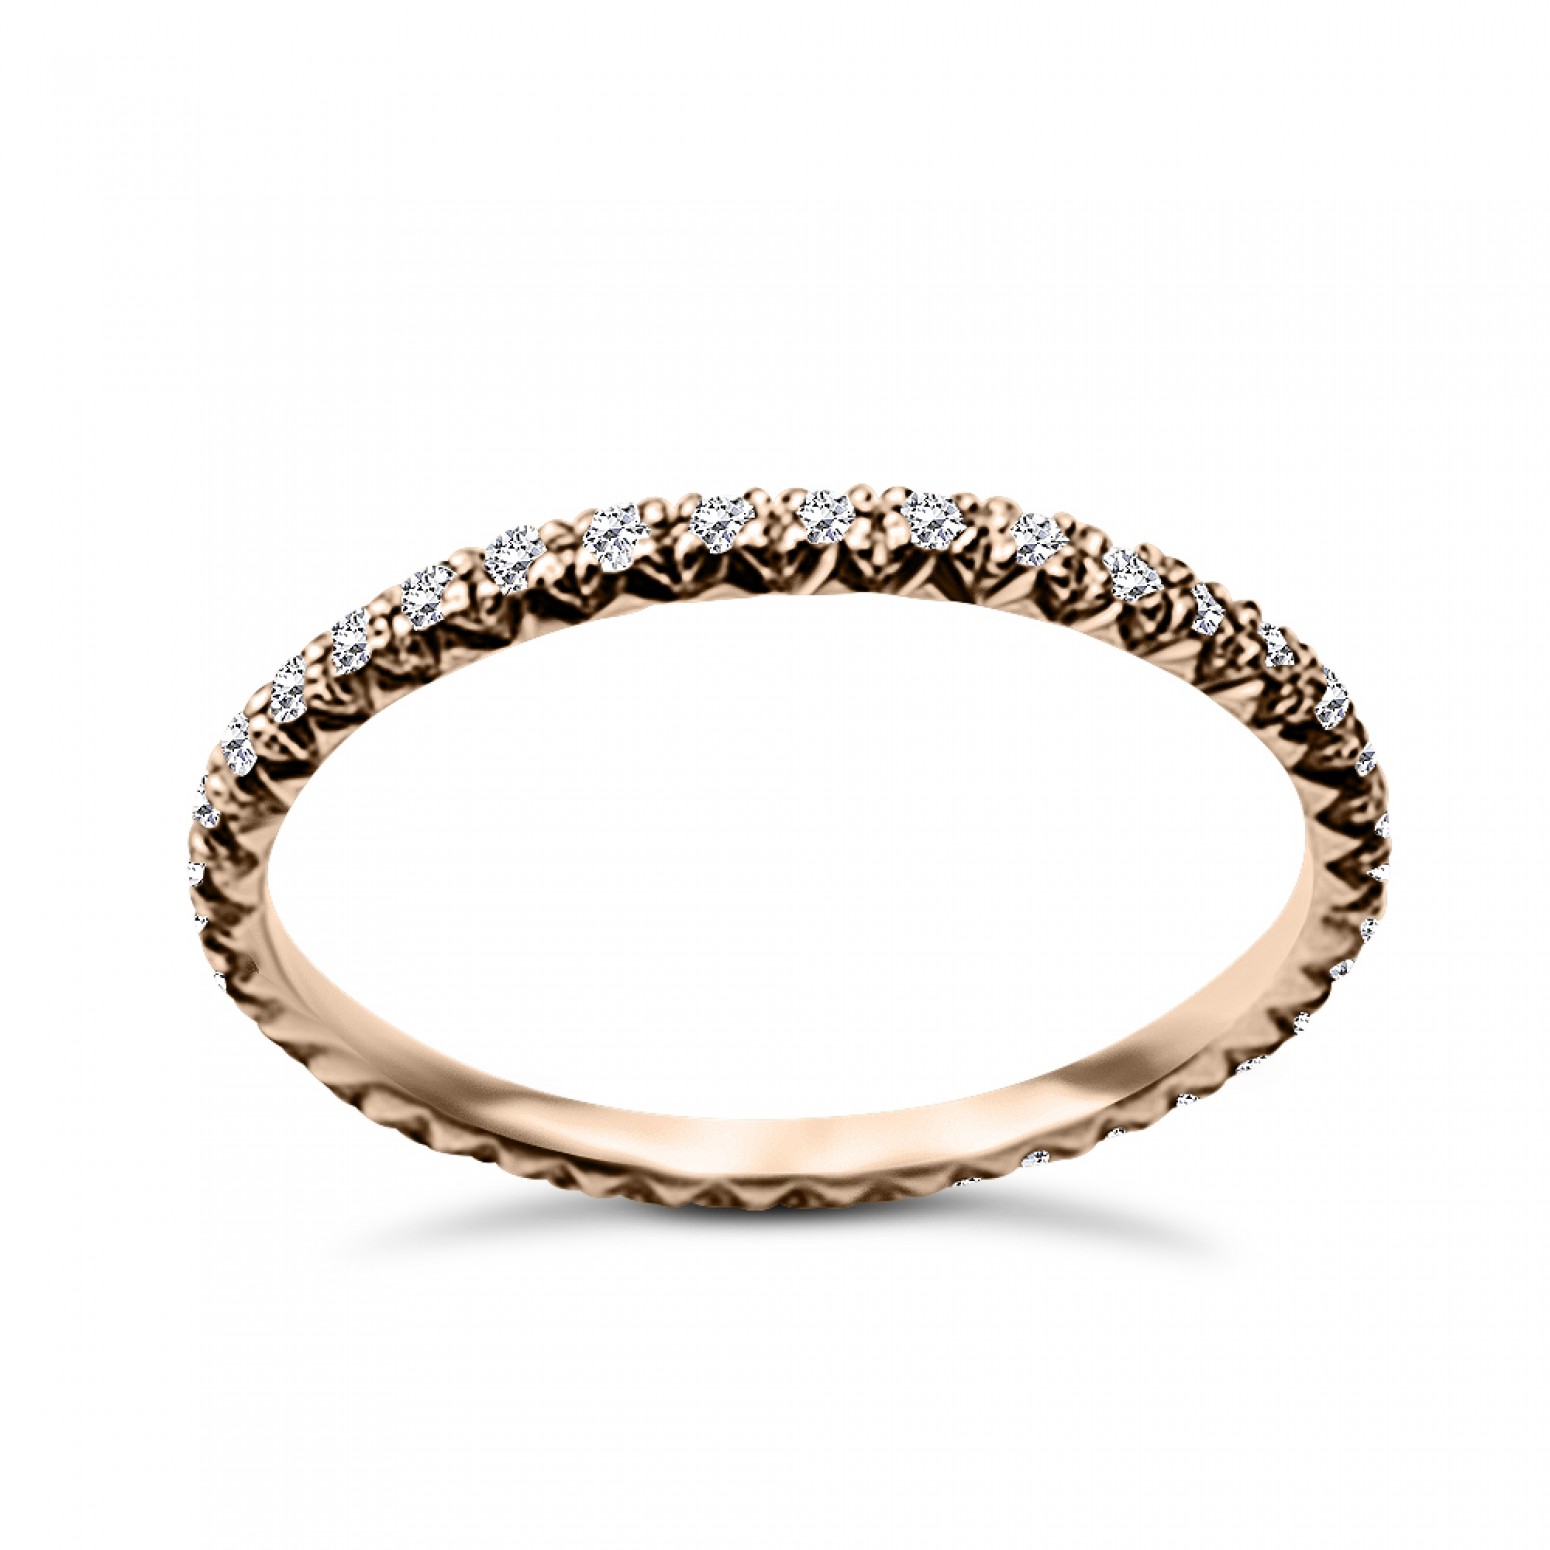 Full stone ring 18K pink gold with diamonds 0.20ct, VS1, G da3374 ENGAGEMENT RINGS Κοσμηματα - chrilia.gr